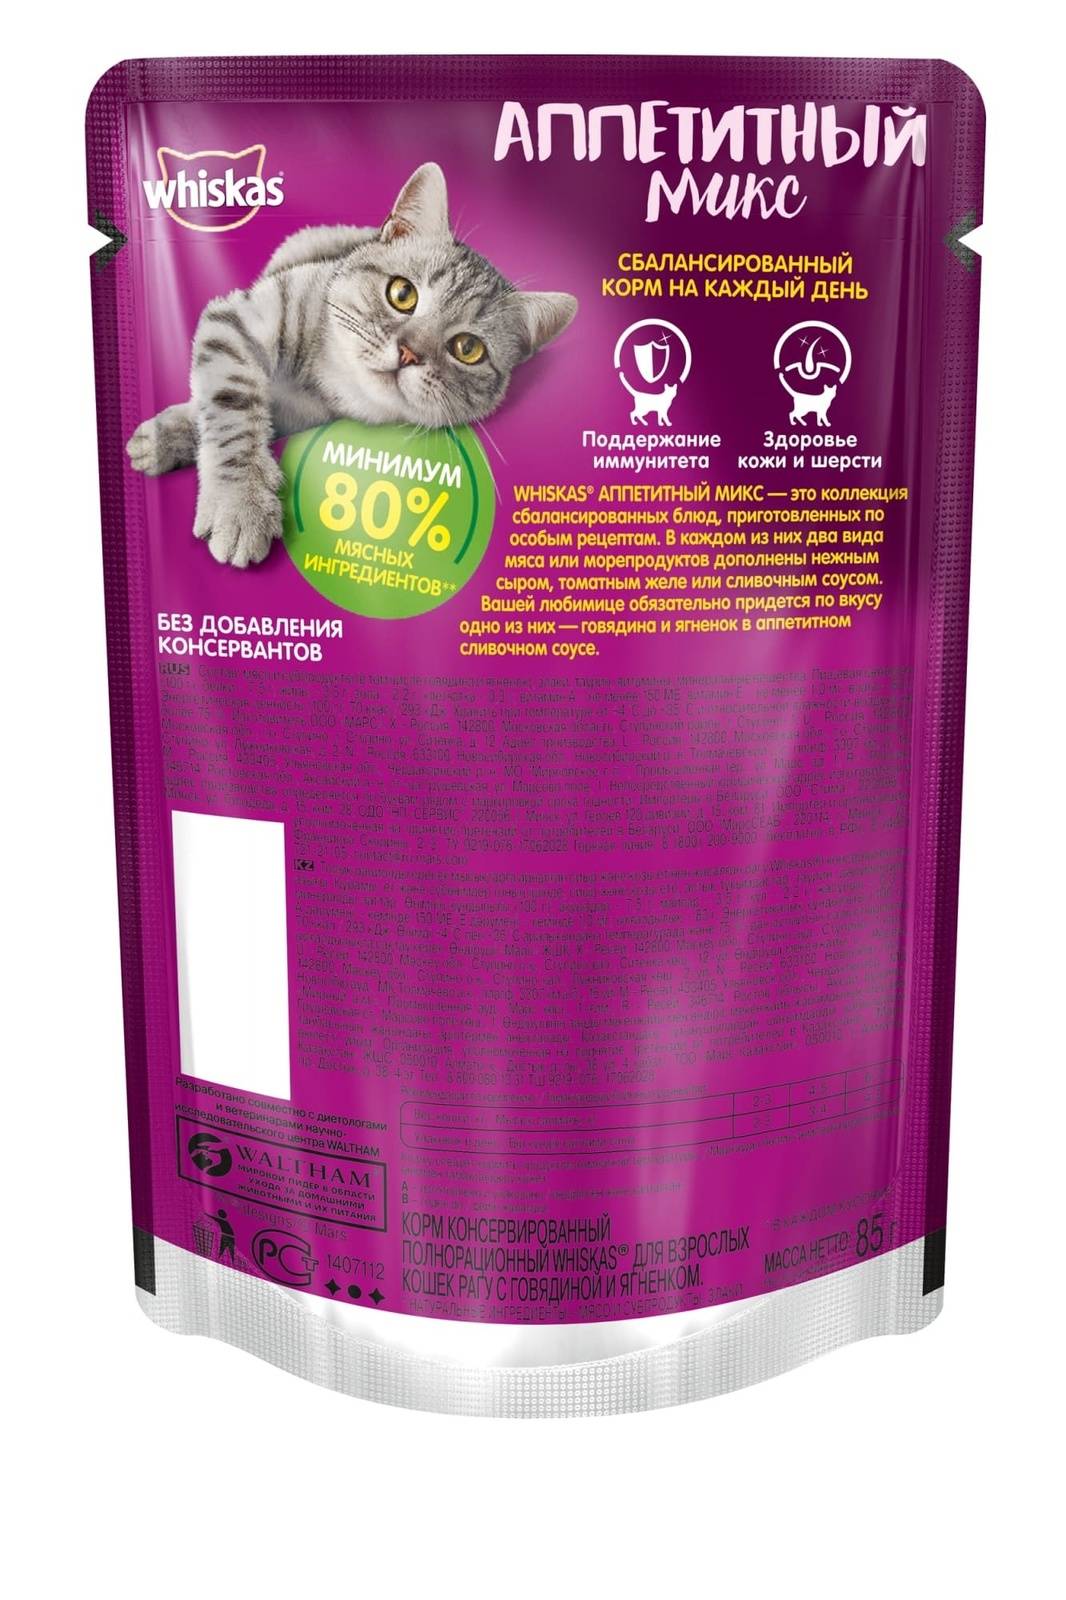 Brit premium (брит премиум): обзор корма для кошек, состав, отзывы